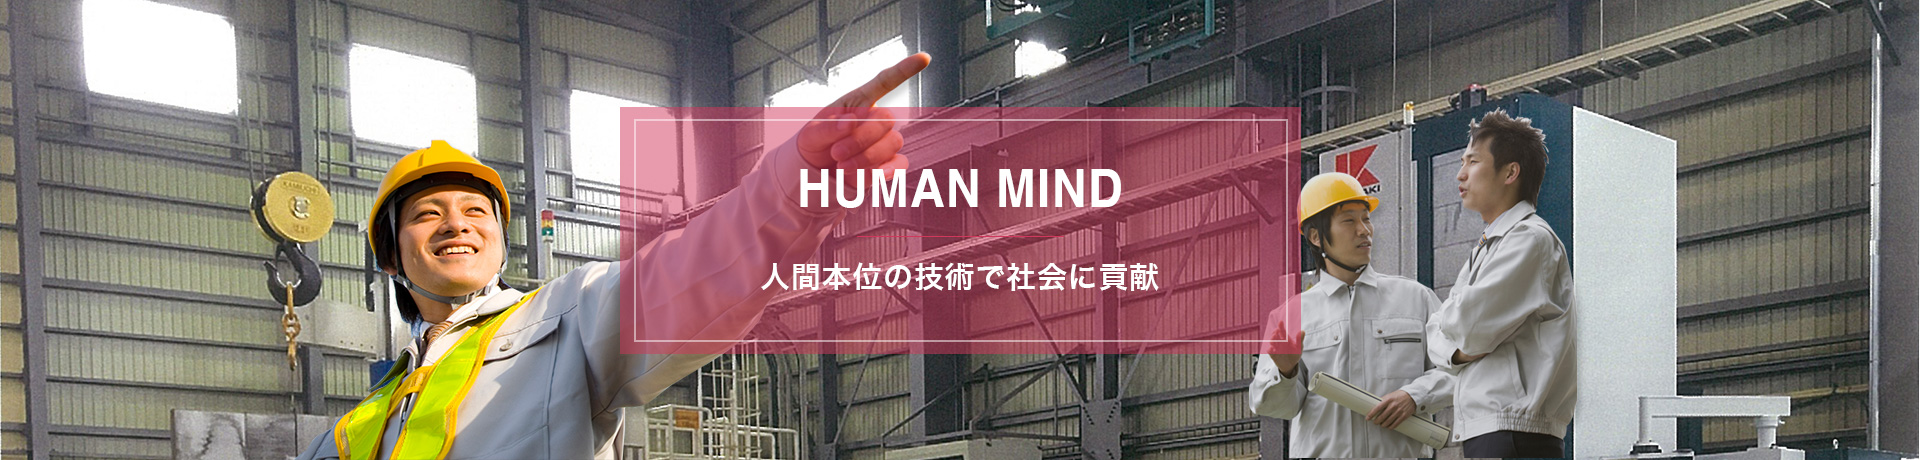 HUMAN MIND